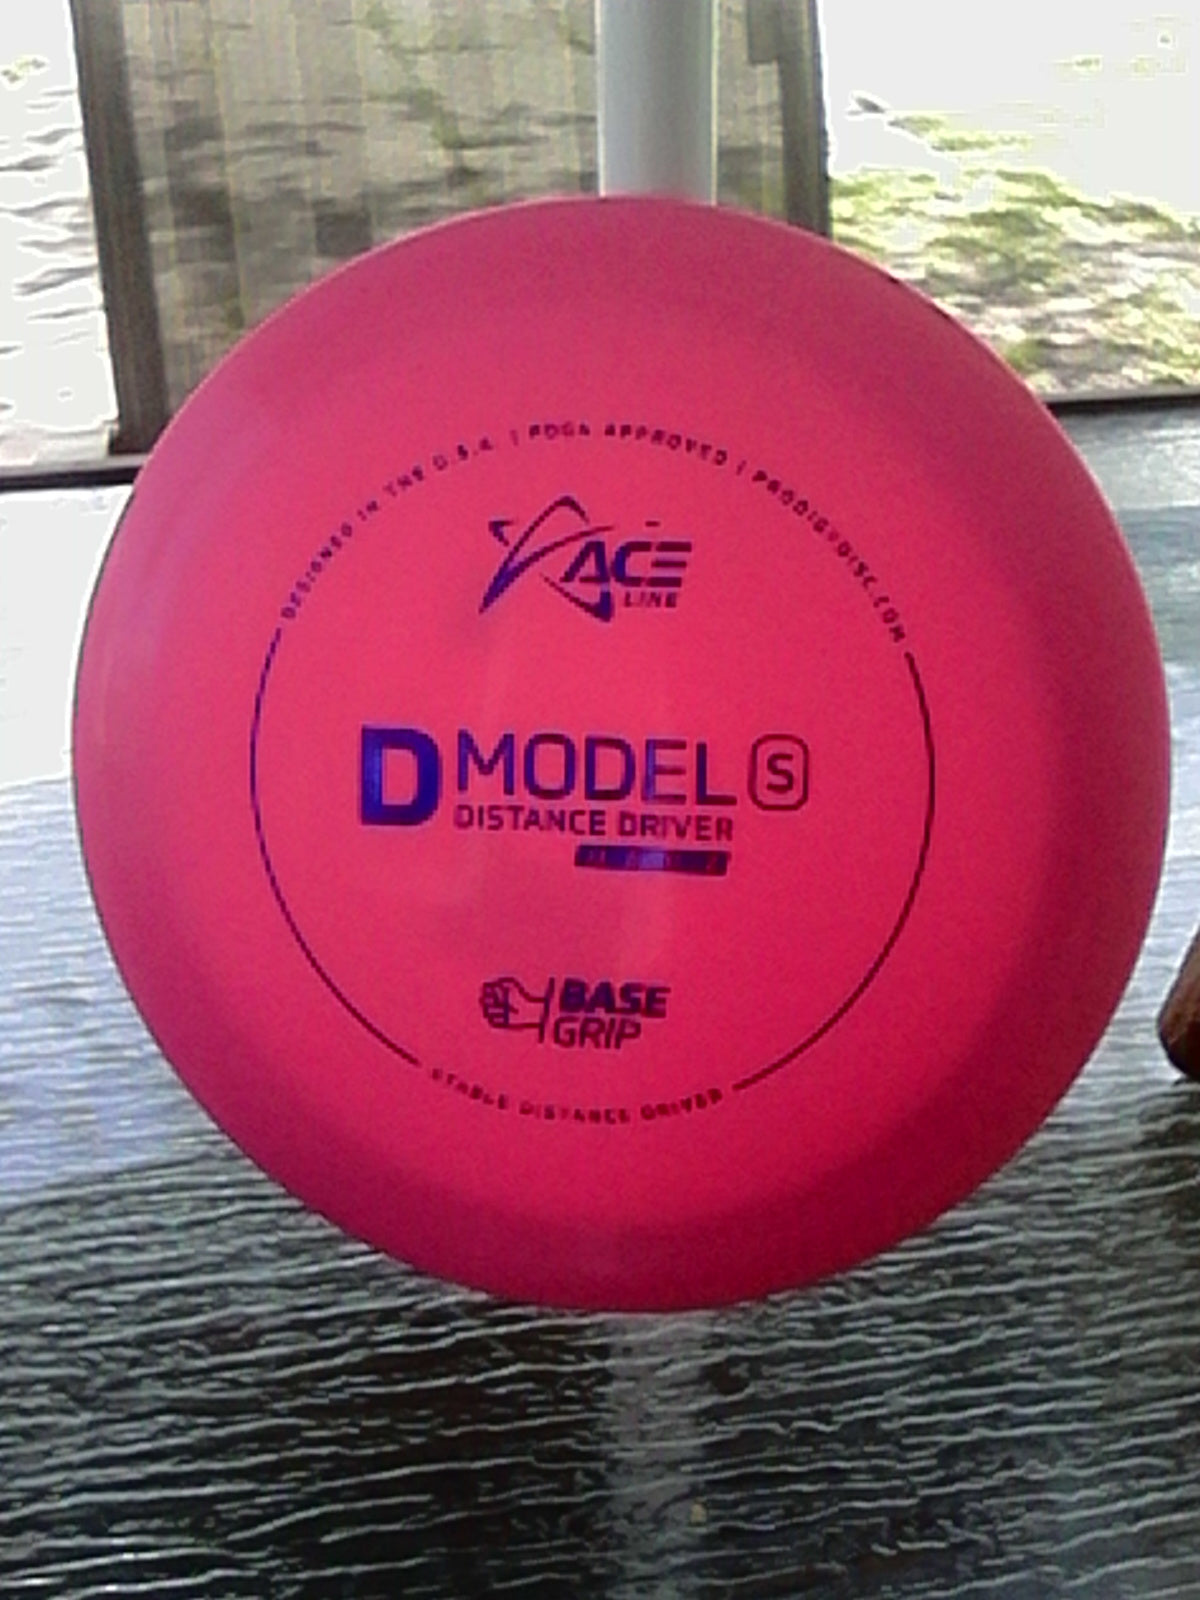 Prodigy Ace Line Base Grip D Model S 155 Grams (DS5A,B)